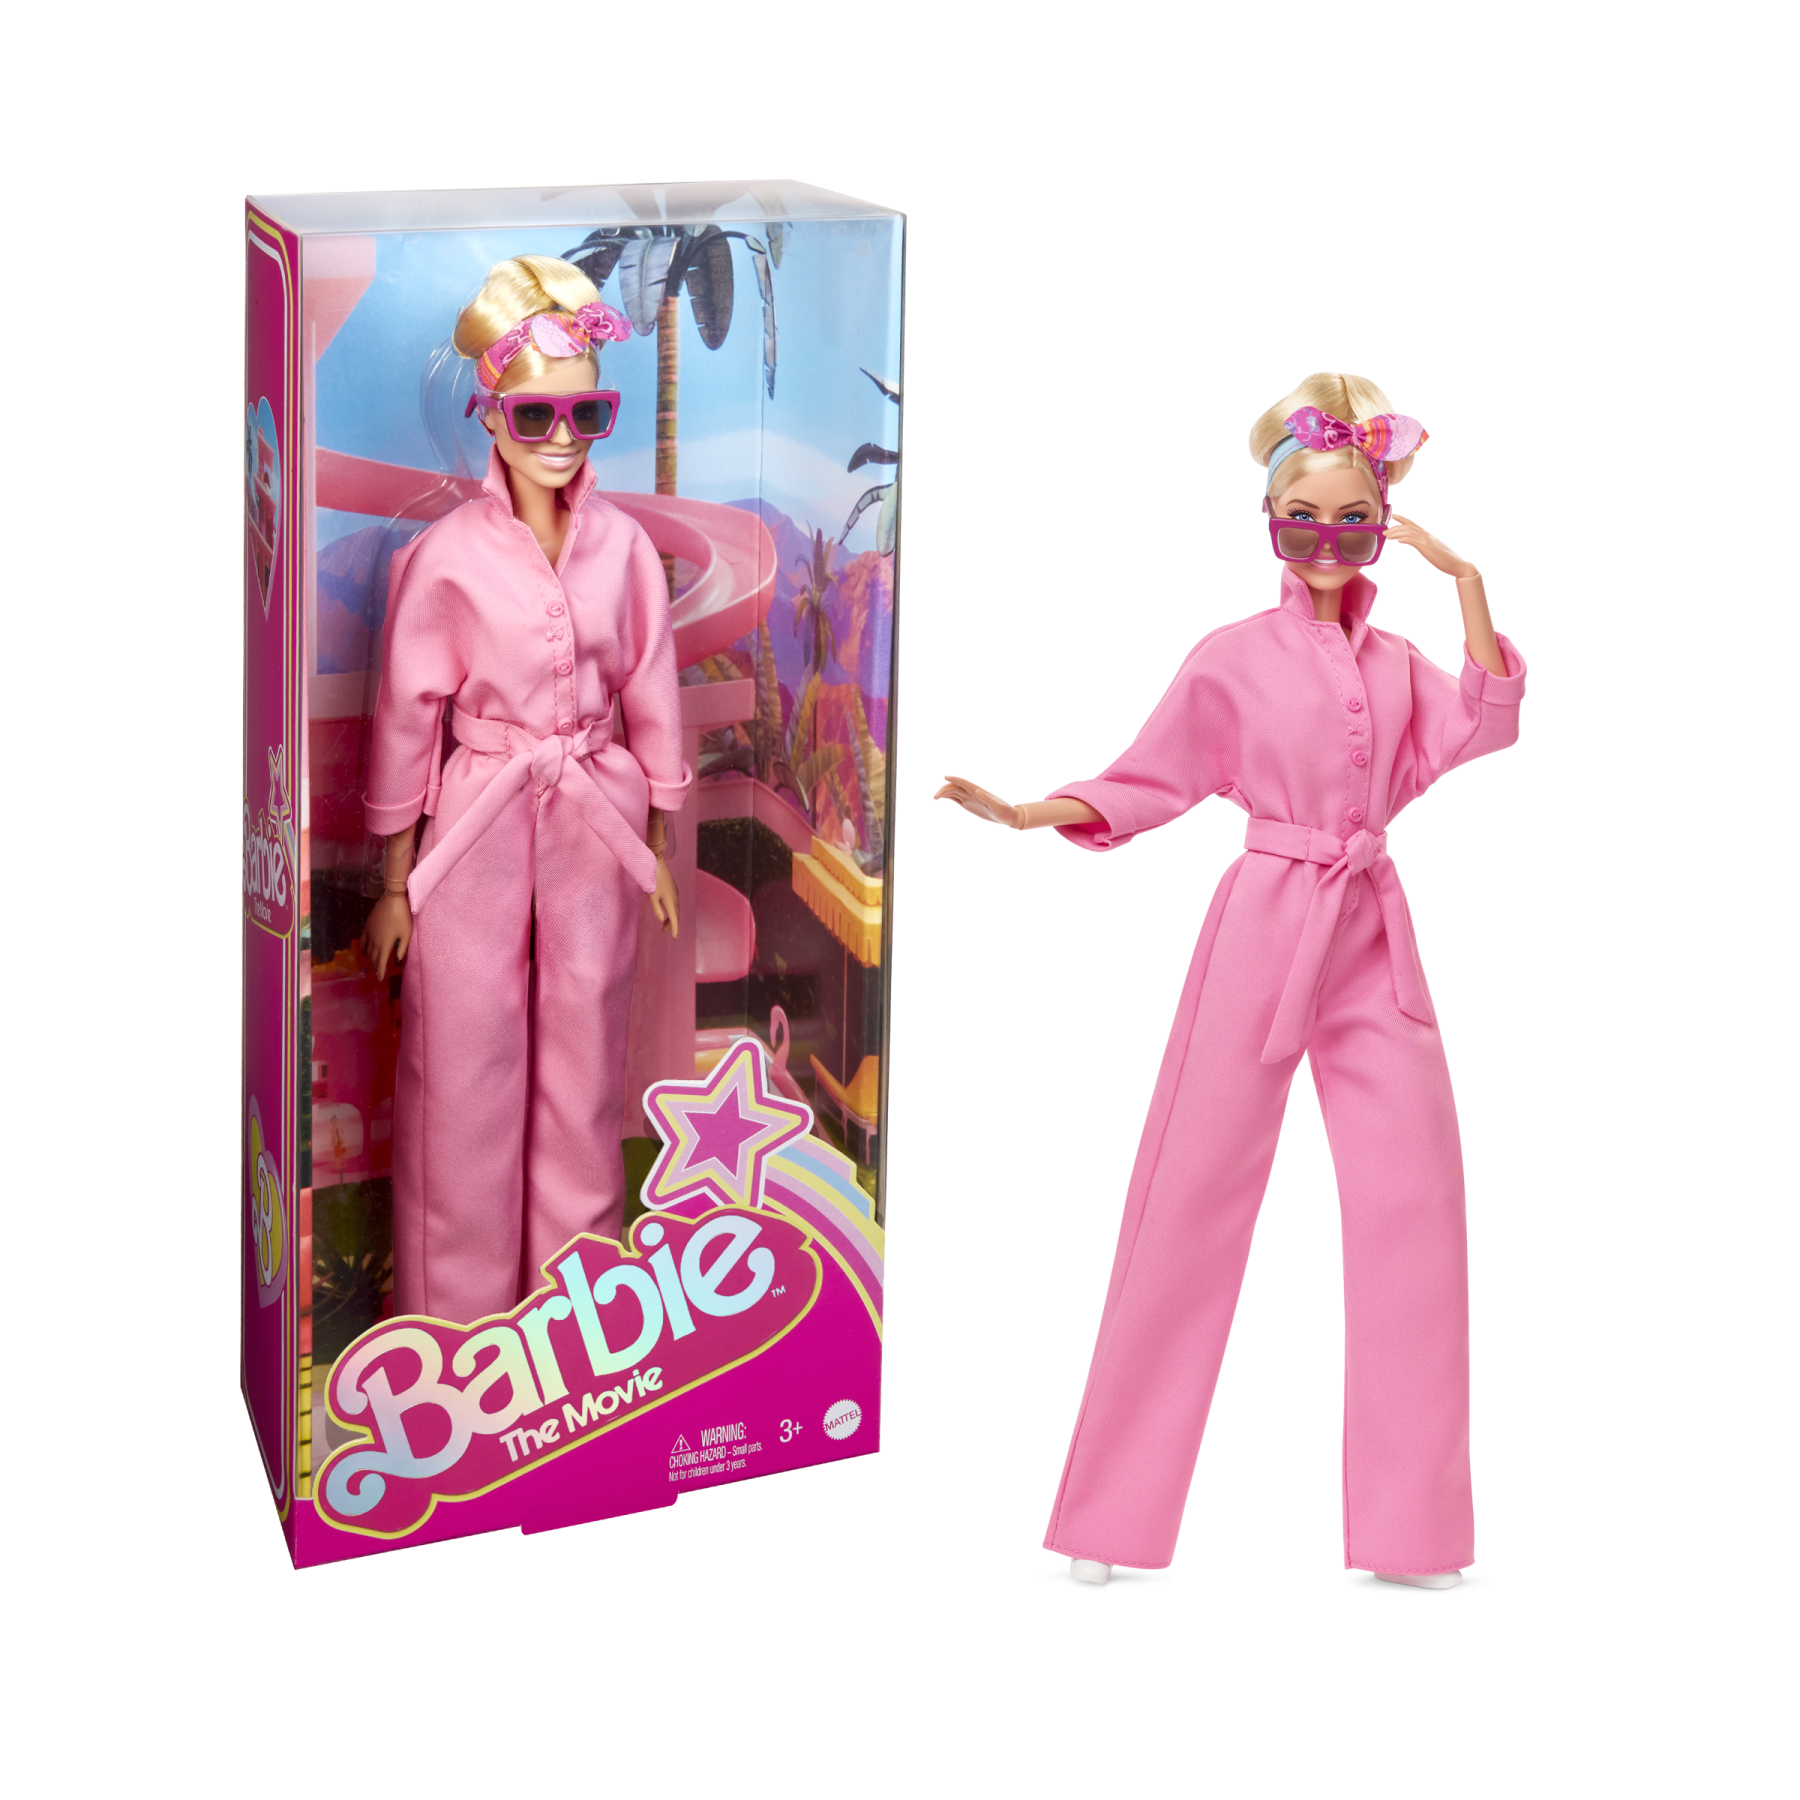 Barbie the movie - margot robbie, bambola del film barbie da collezione con tuta pink power, occhiali da sole e fascia per capelli, 3+ anni, hrf29 - Barbie